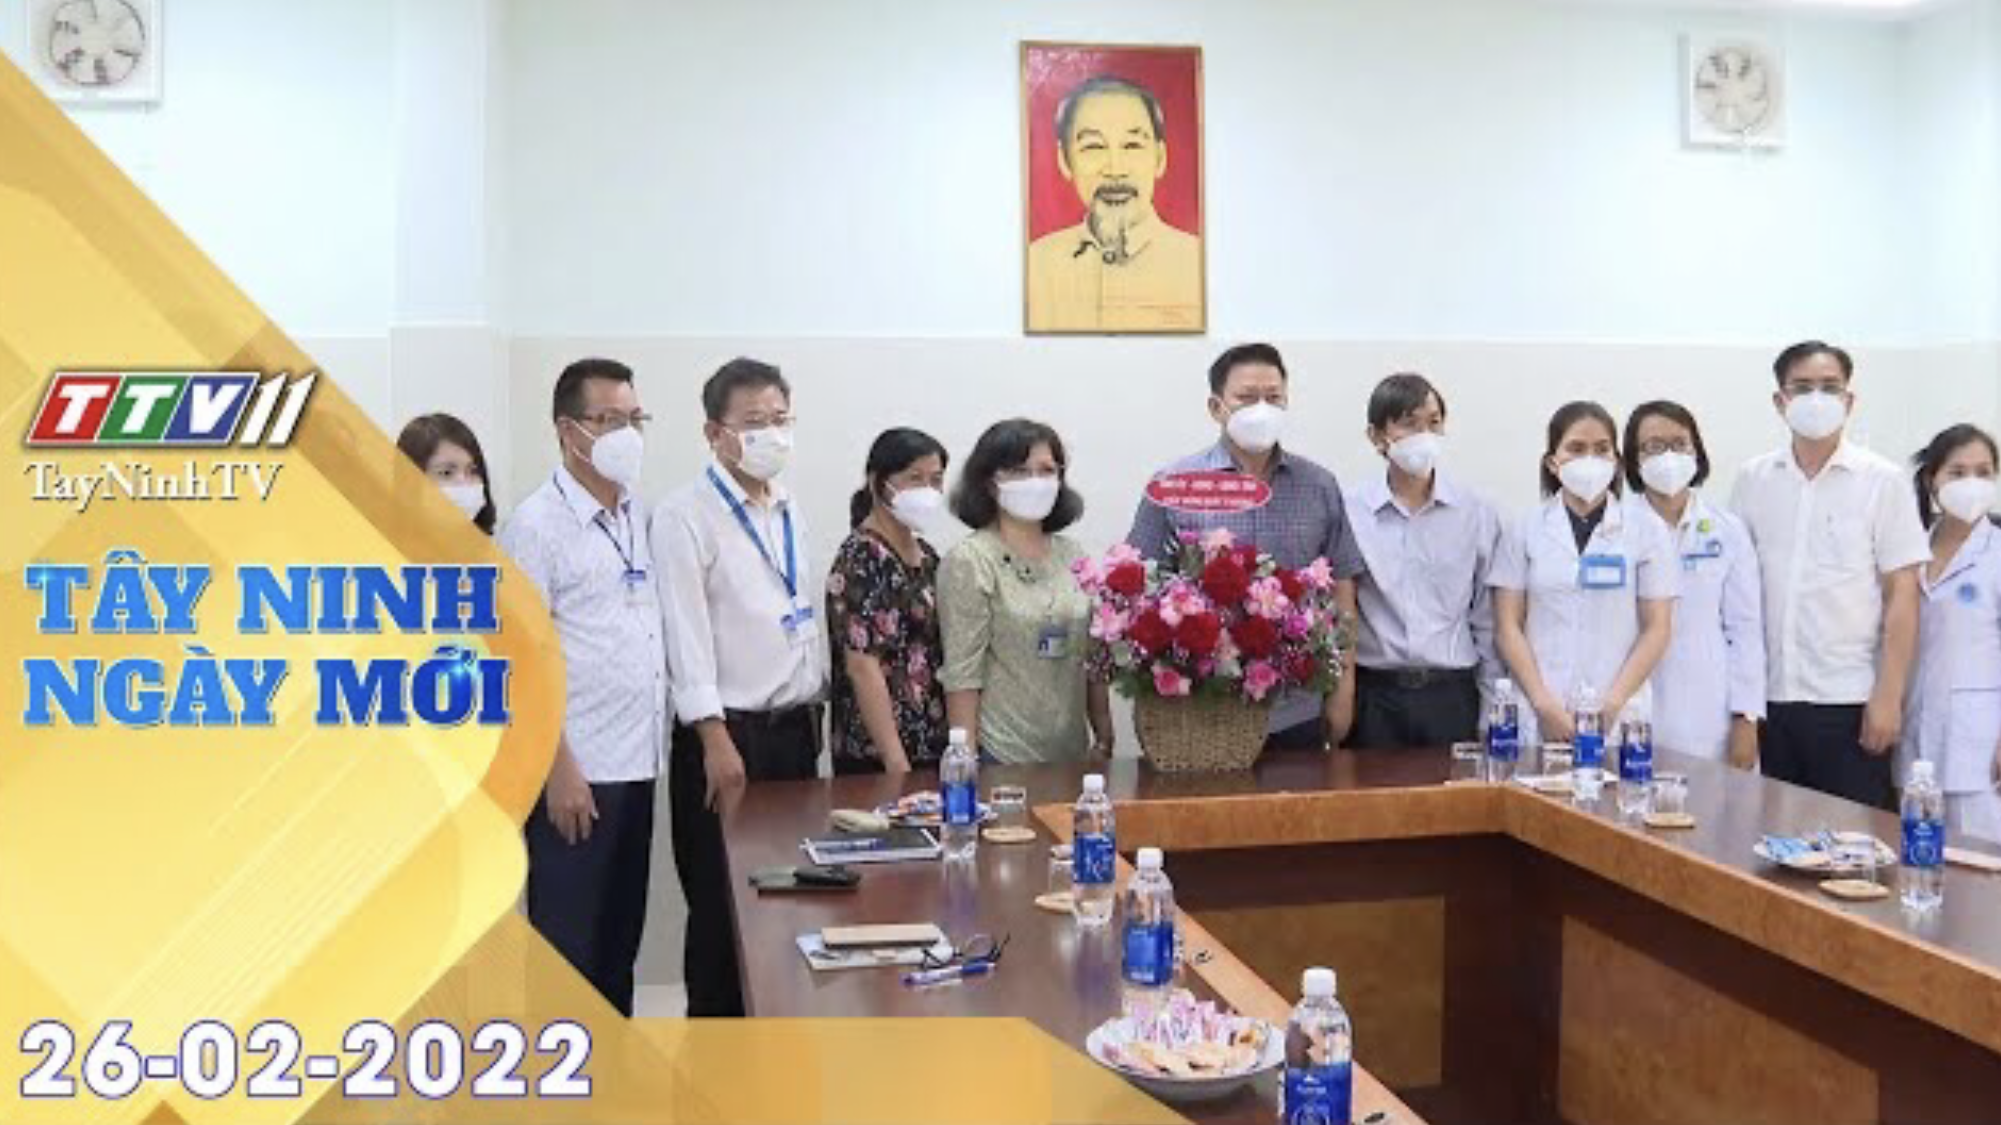 Tây Ninh ngày mới 26-02-2022 | Tin tức hôm nay | TayNinhTV